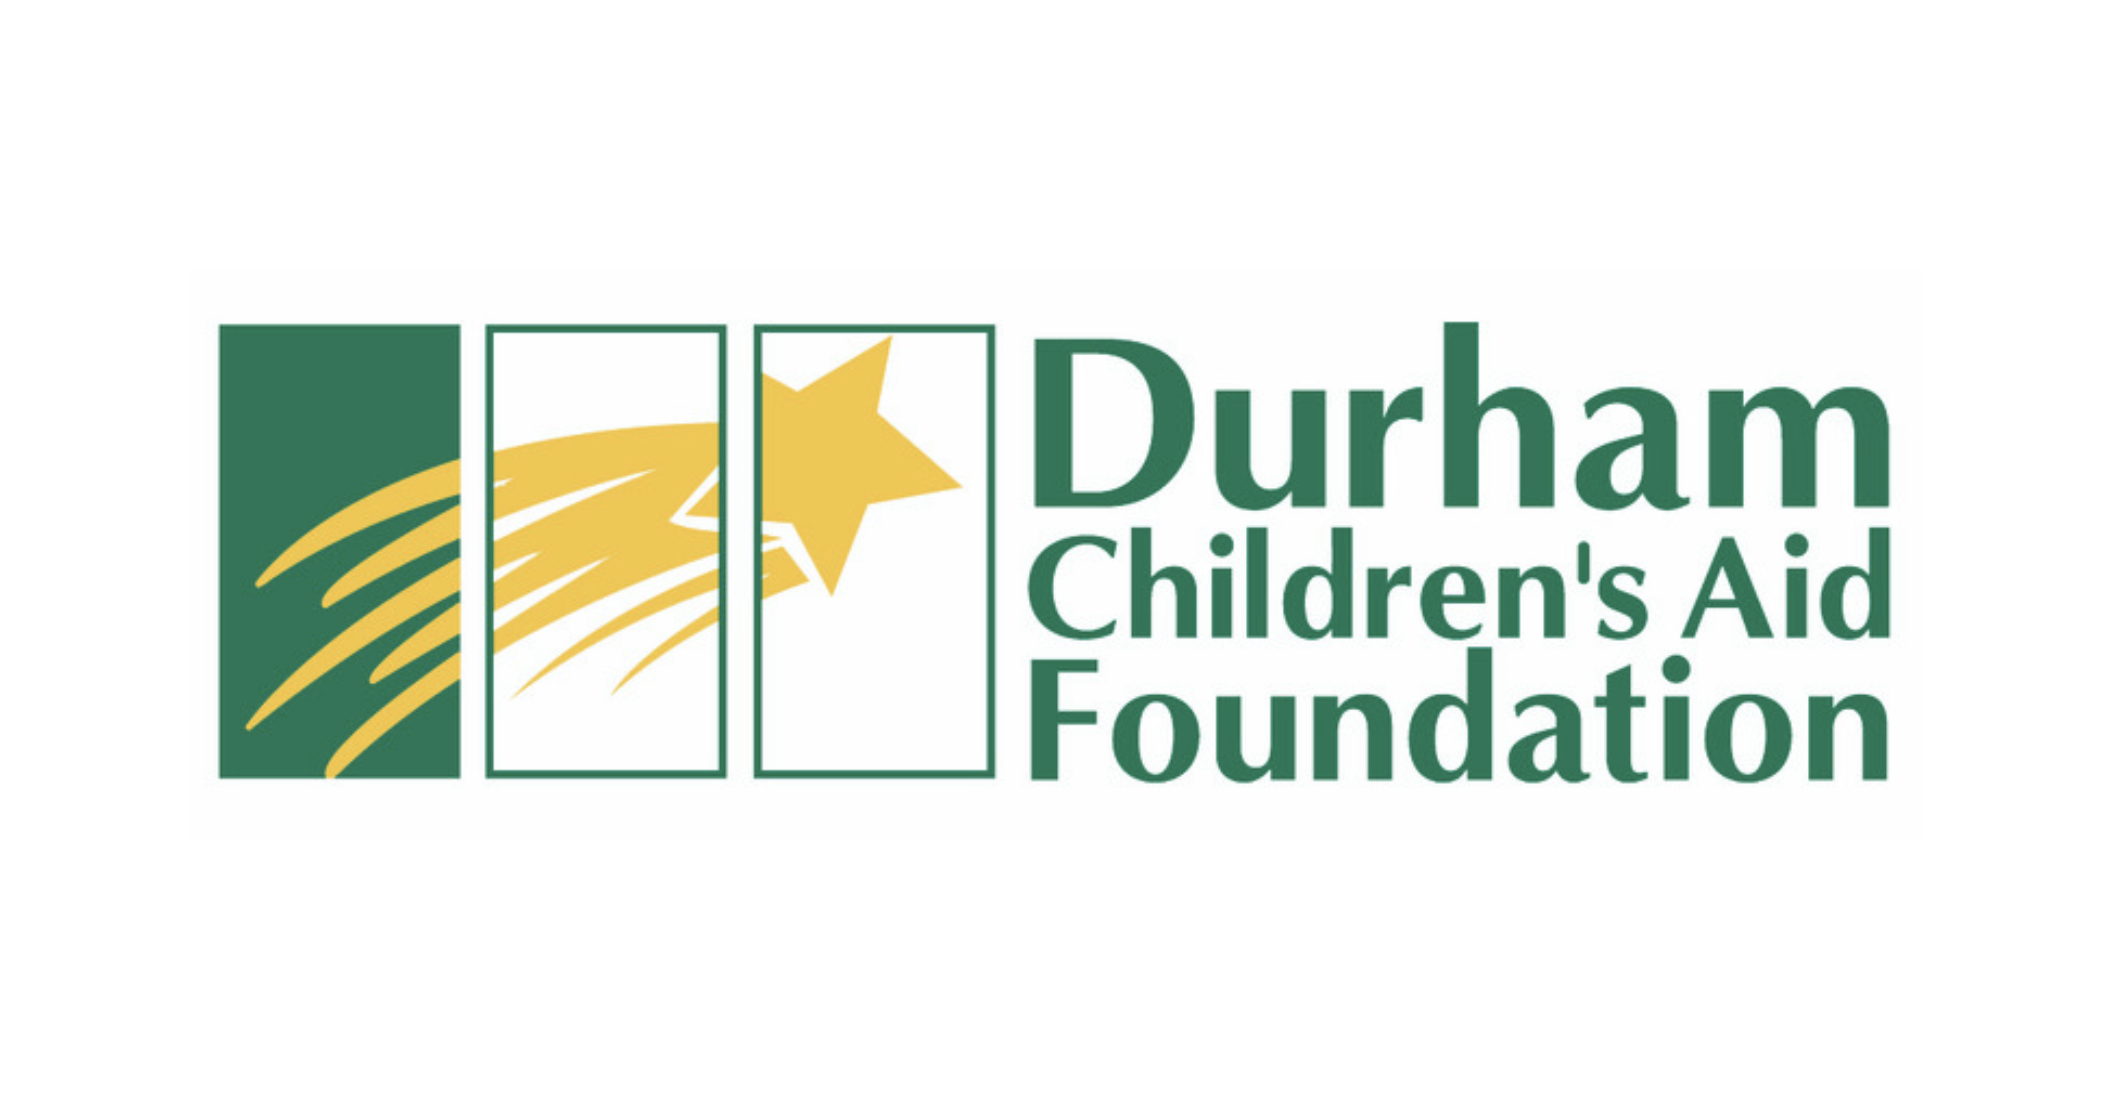 Green4Good soutient le Durham Children’s Aid Foundation avec des outils d’apprentissage en ligne